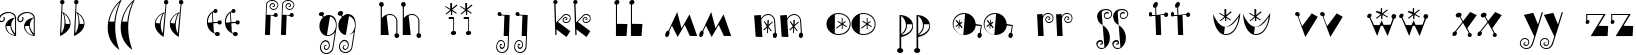 Пример написания английского алфавита шрифтом Moonchild Normal